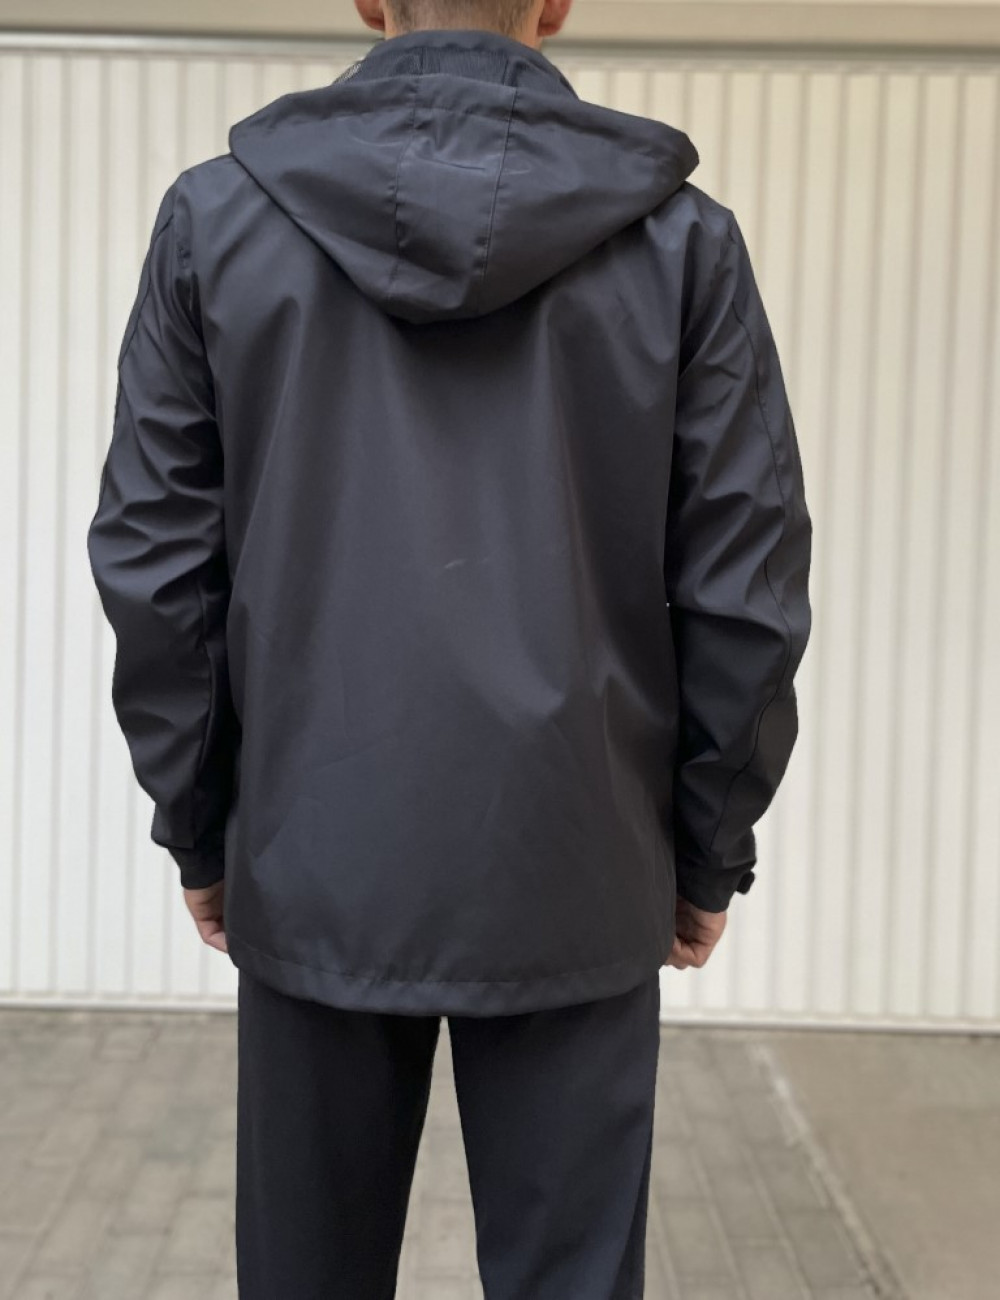 Ανδρικό μαύρο Jacket με κουκούλα D18043